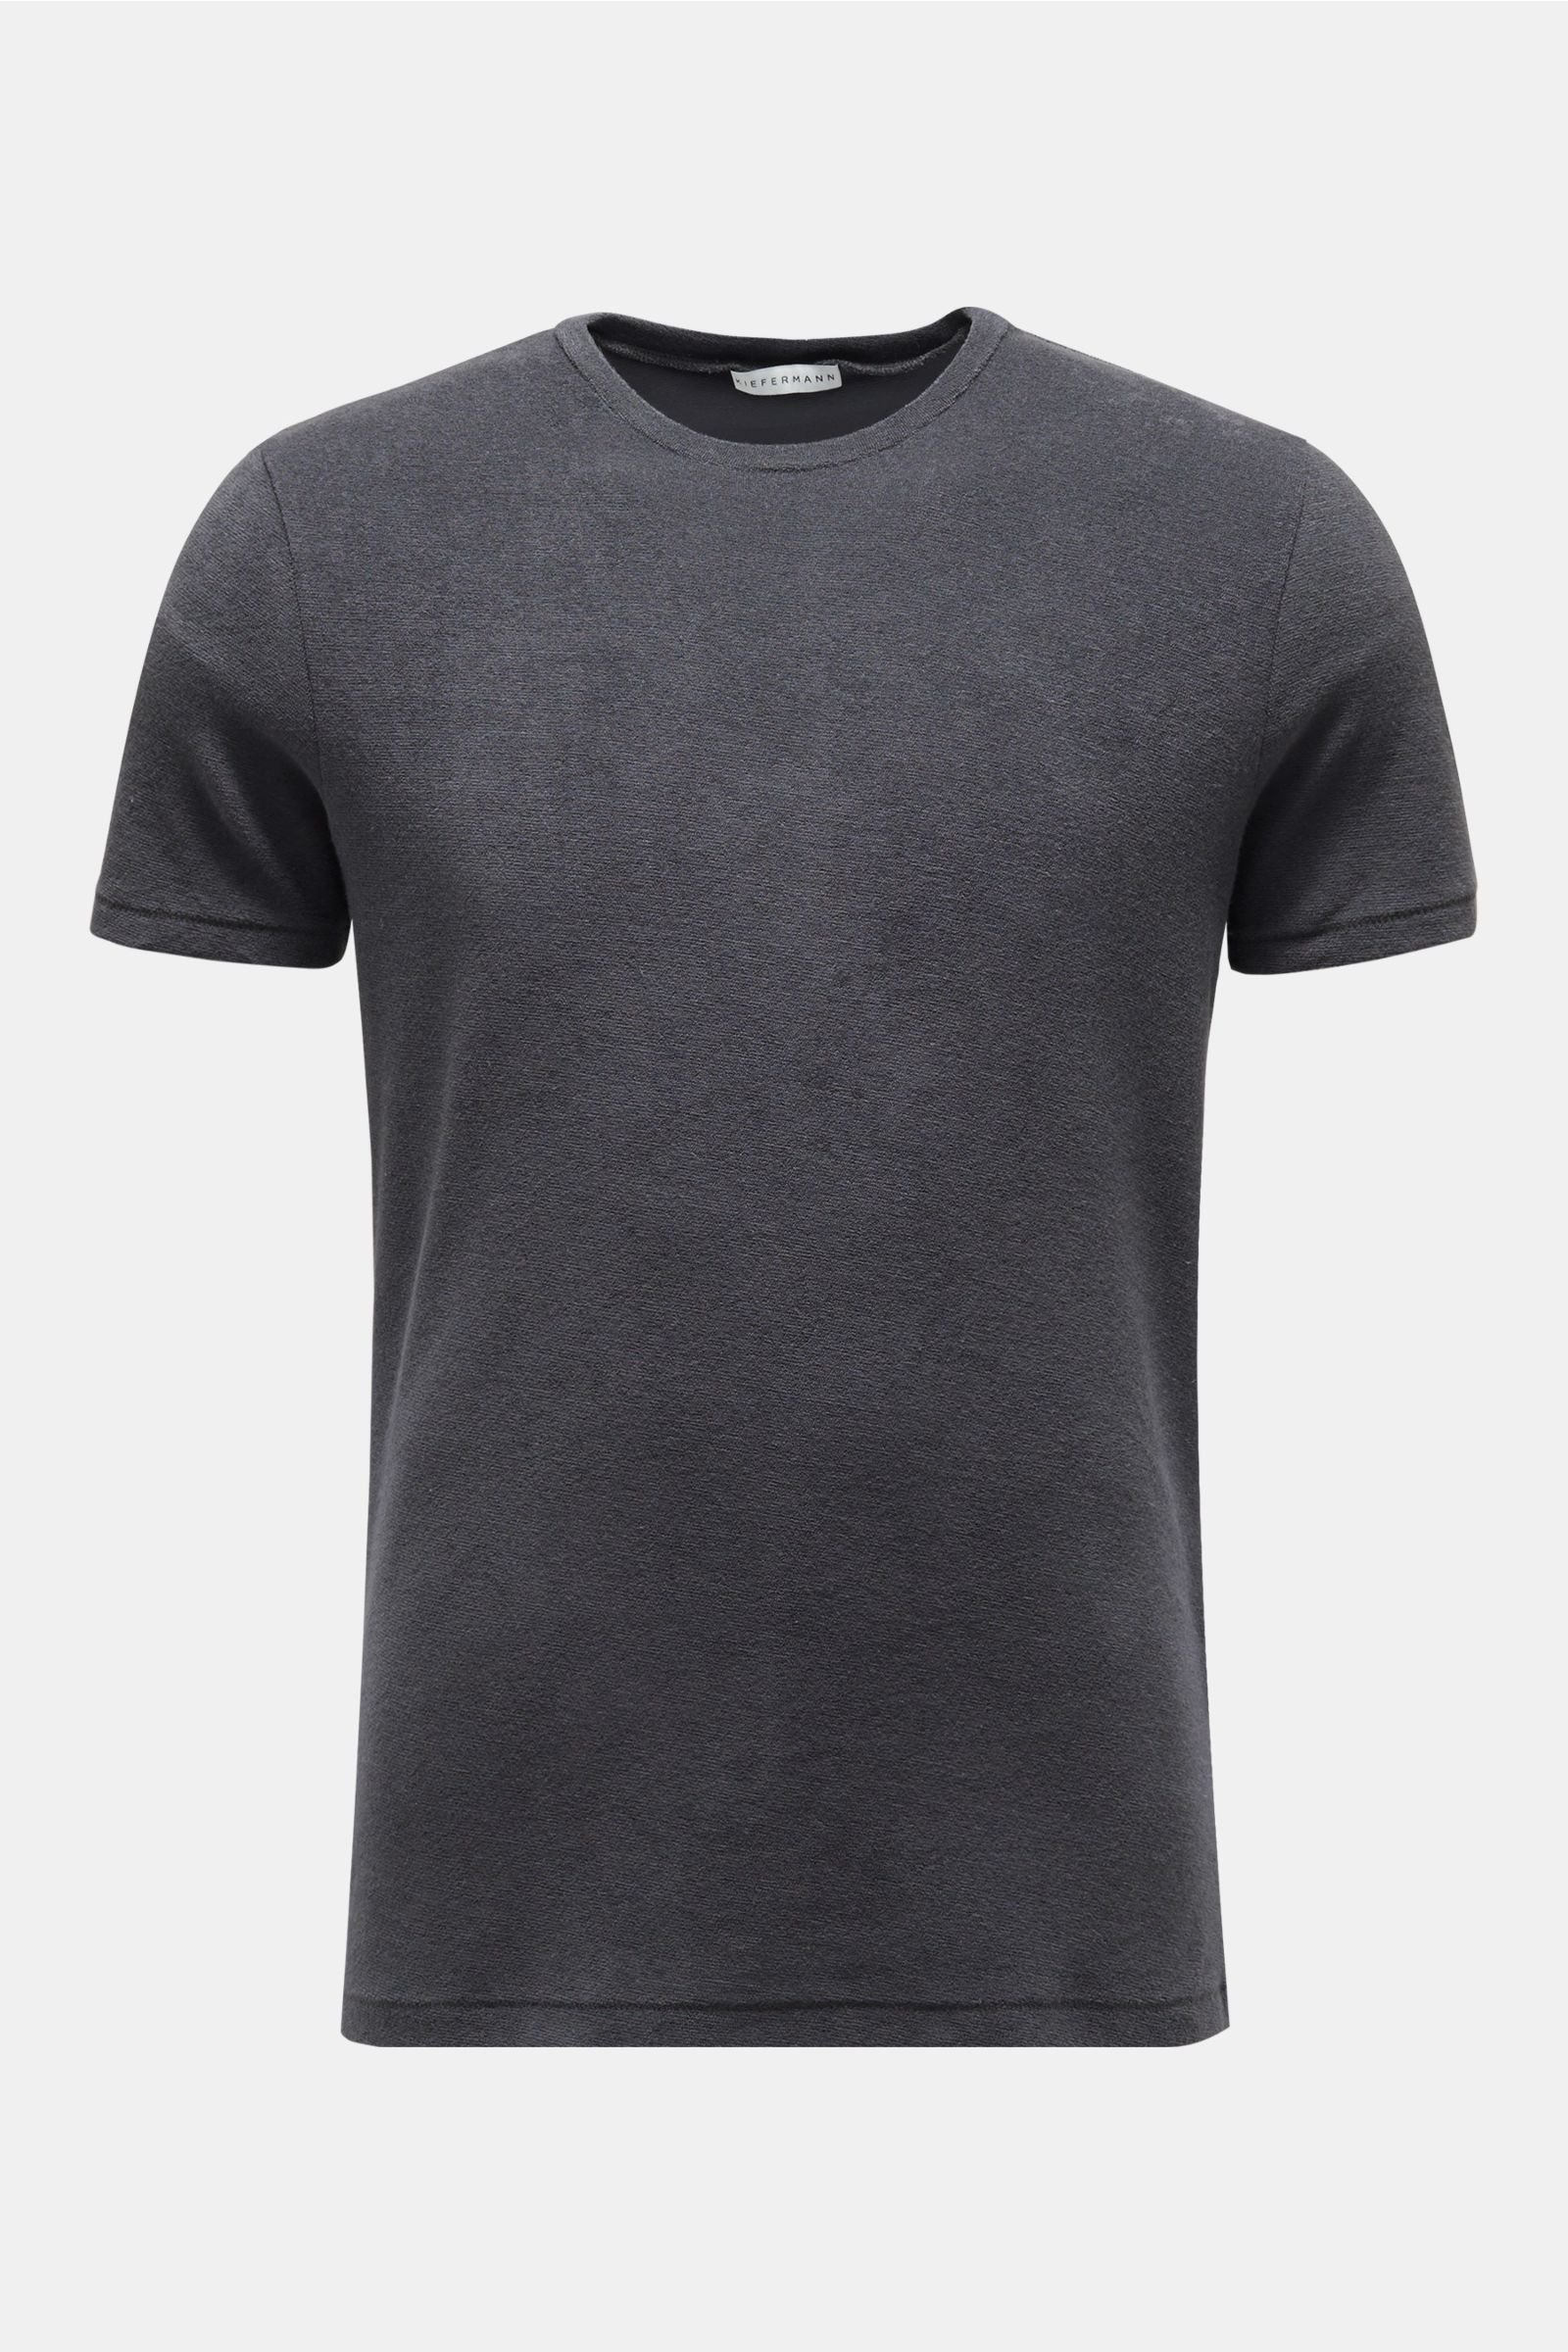 Terry crew neck T-shirt 'Owen' dark grey